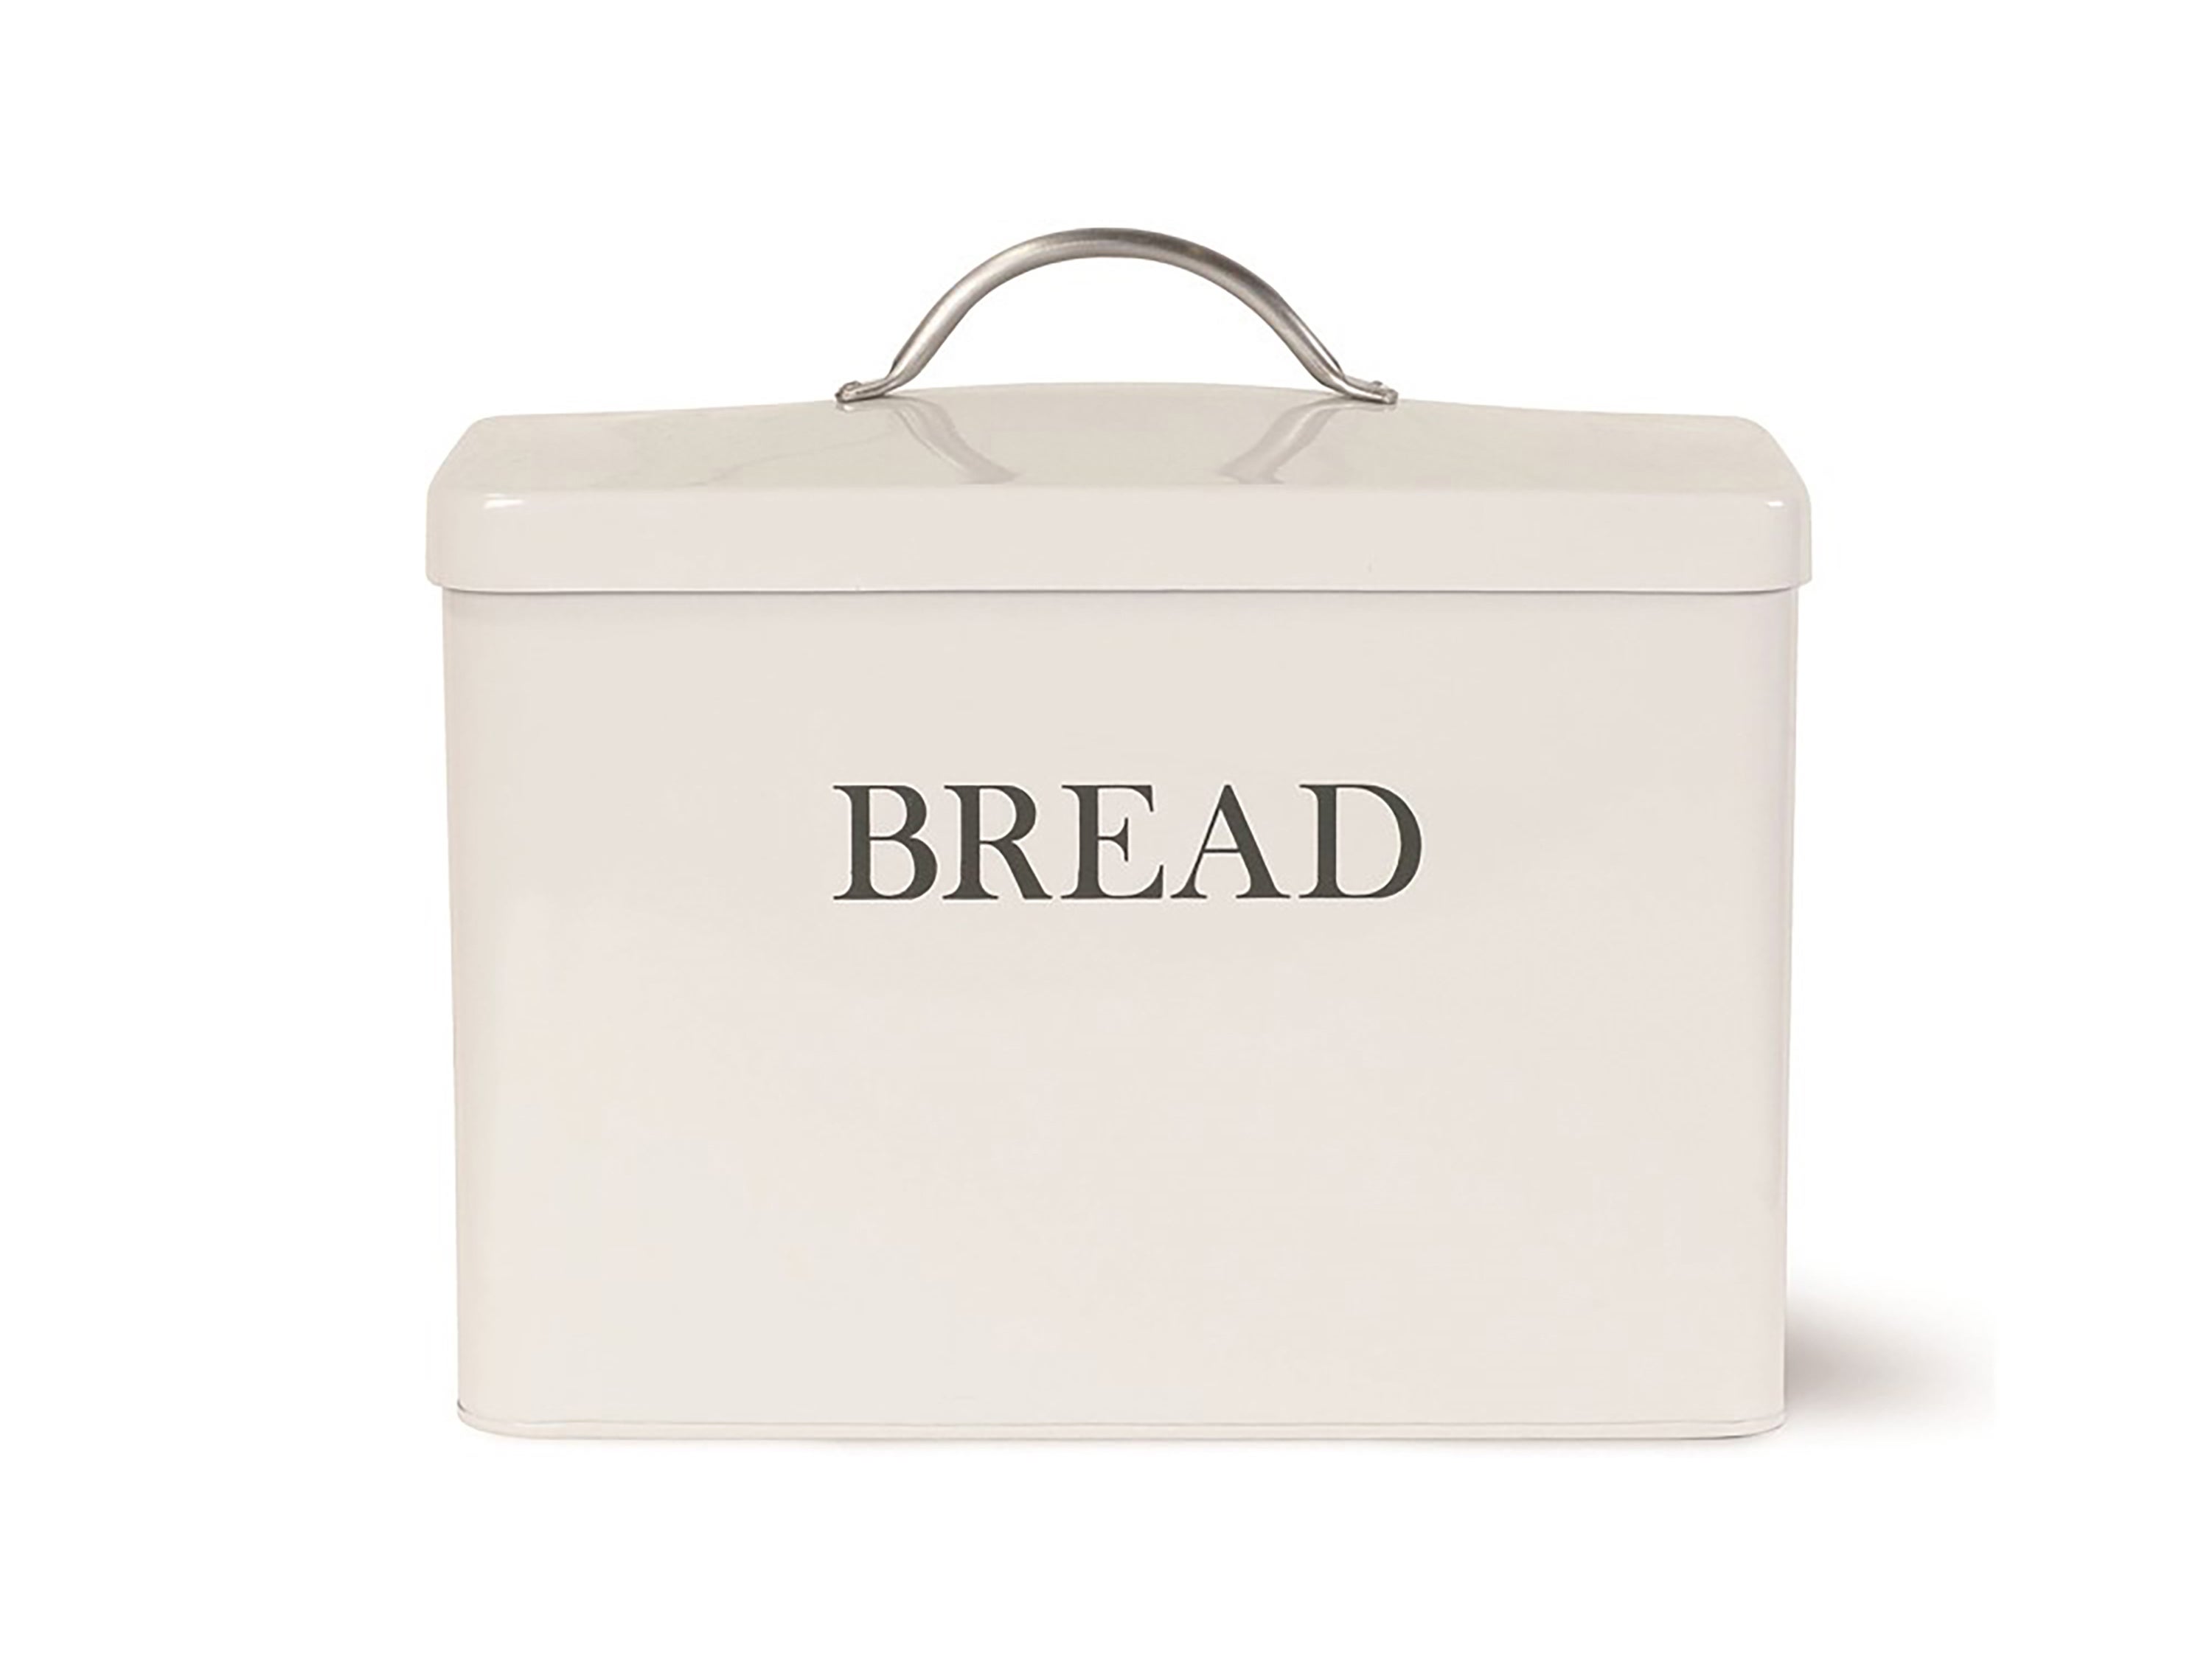 Cotswold Co Bread bin.jpg